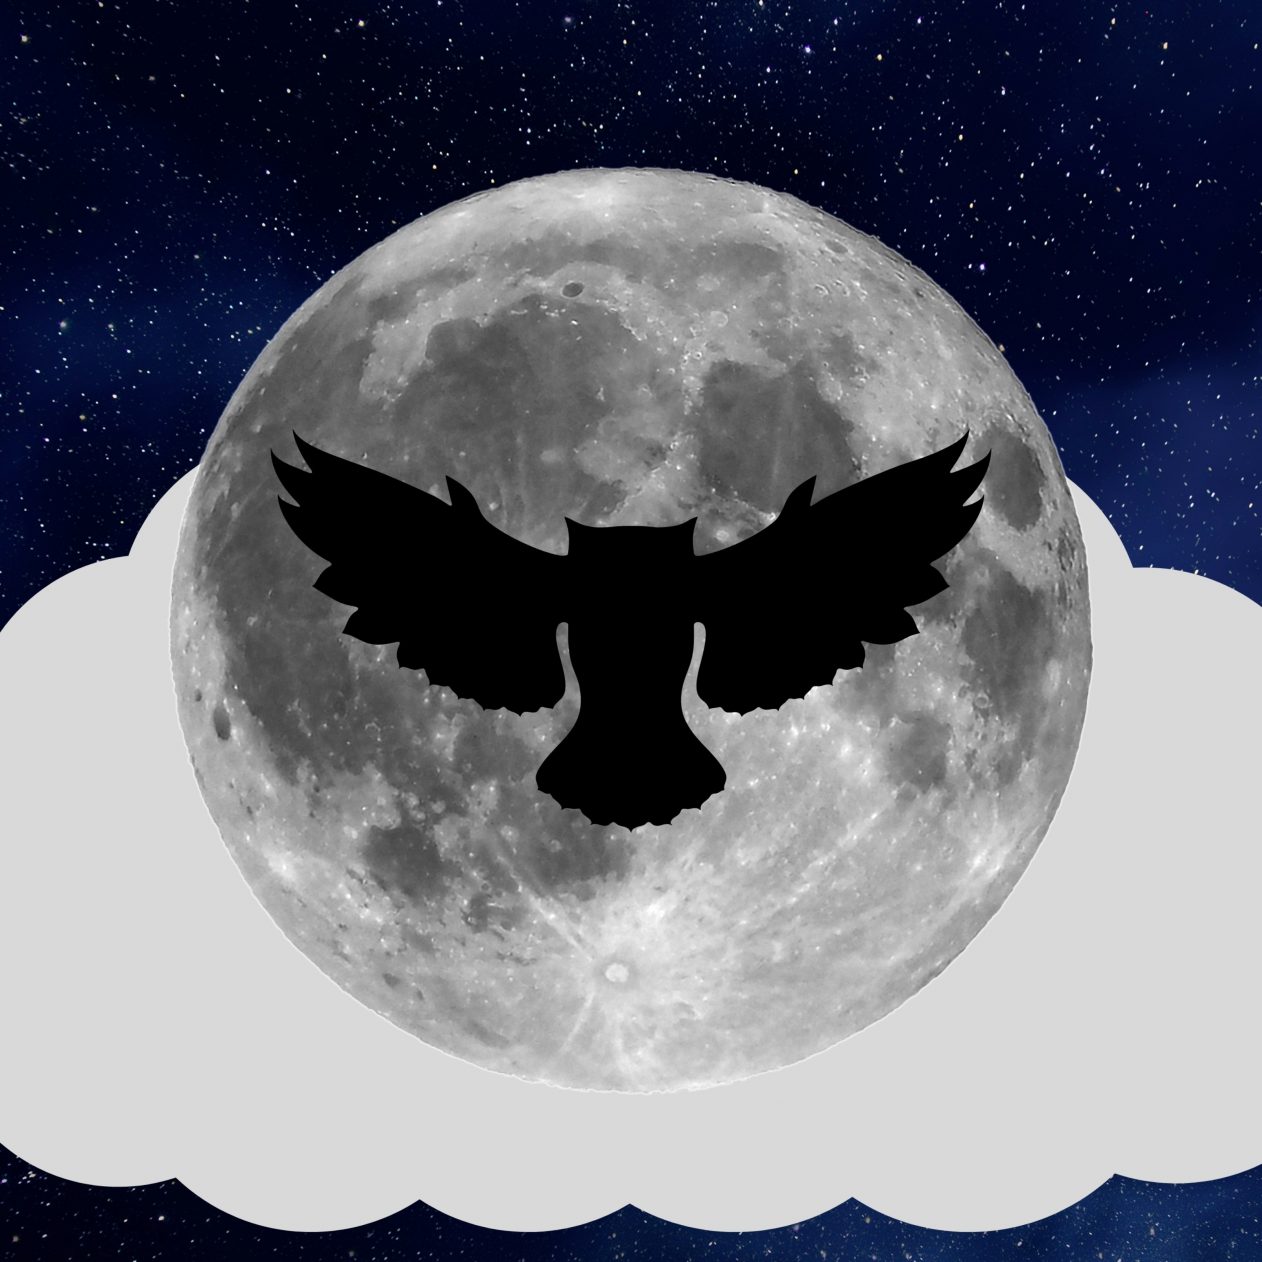 1262x1262 Parallax wallpaper 4k Night Owl Full Moon iPad Wallpaper 1262x1262 pixels resolution